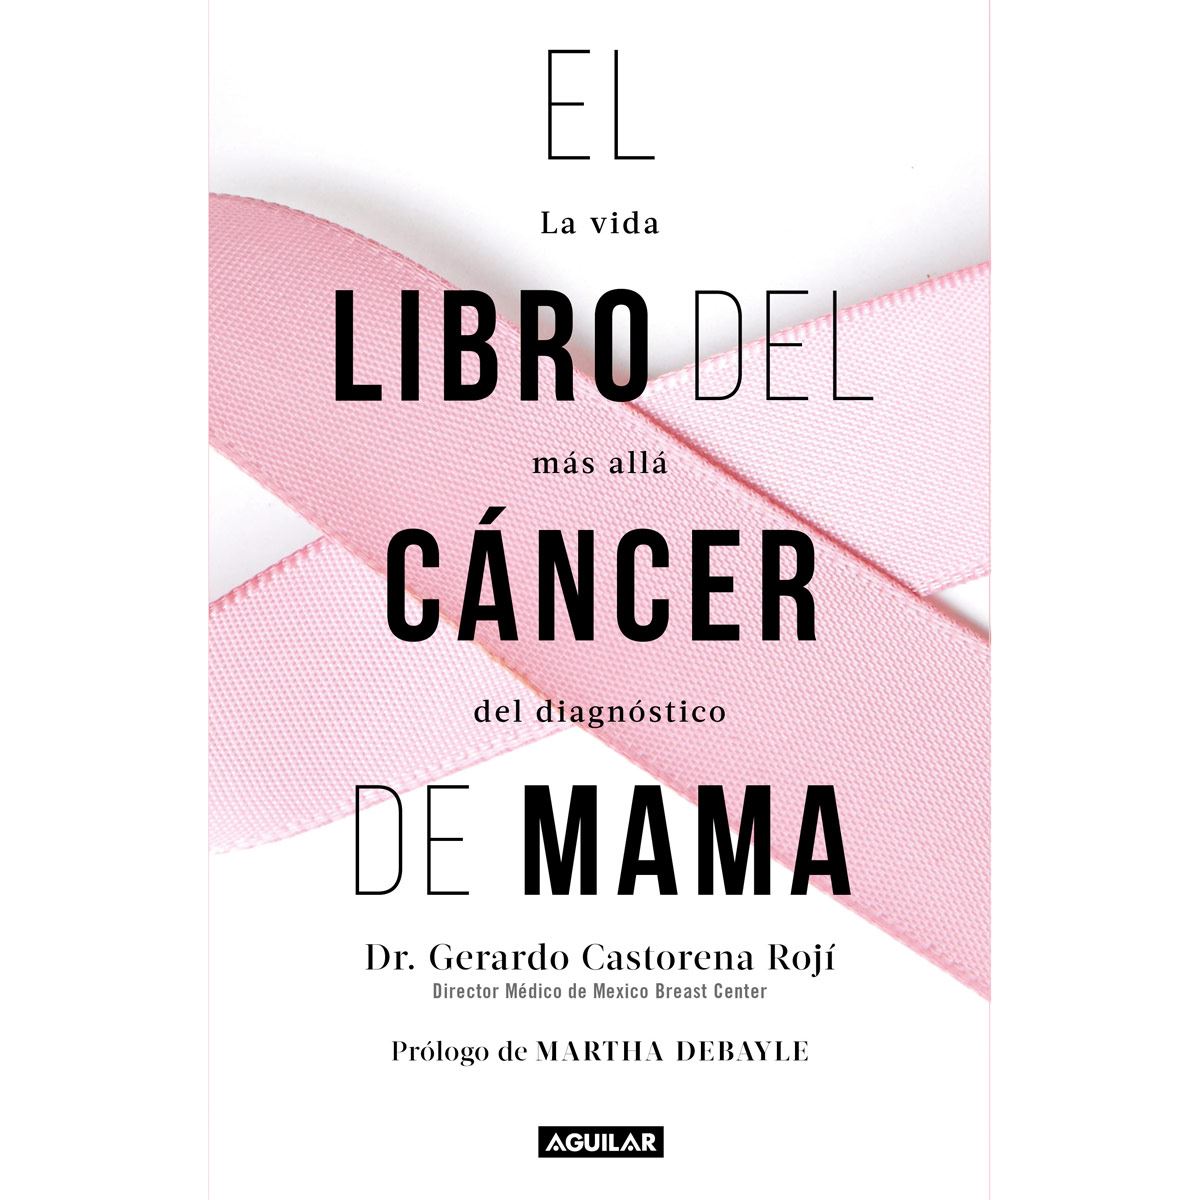 El libro del cáncer de mama